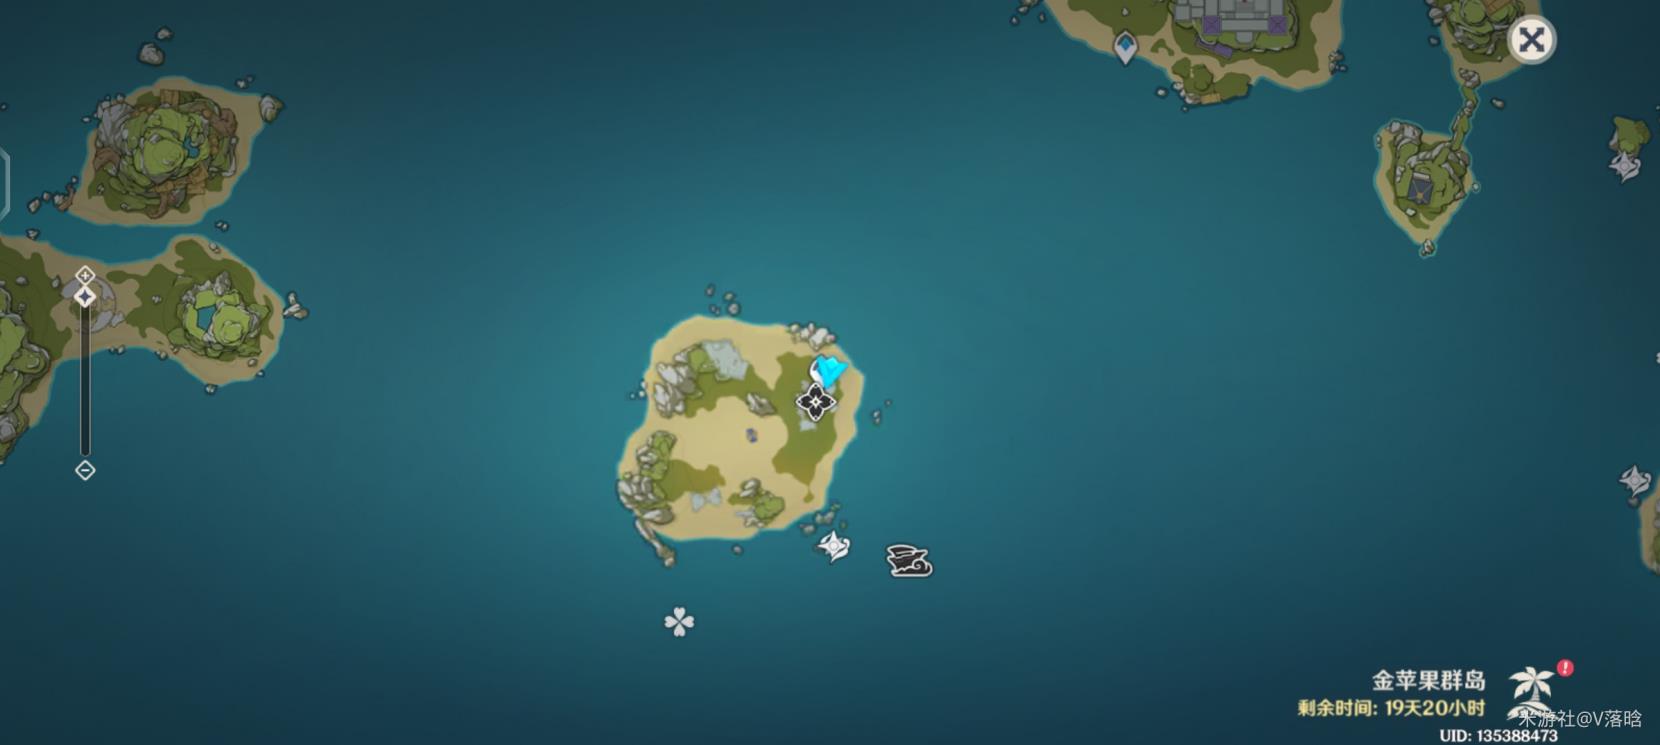 《原神》V2.8海岛追想练行活动玩法详解 追想练行三种主题玩法介绍 - 第1张